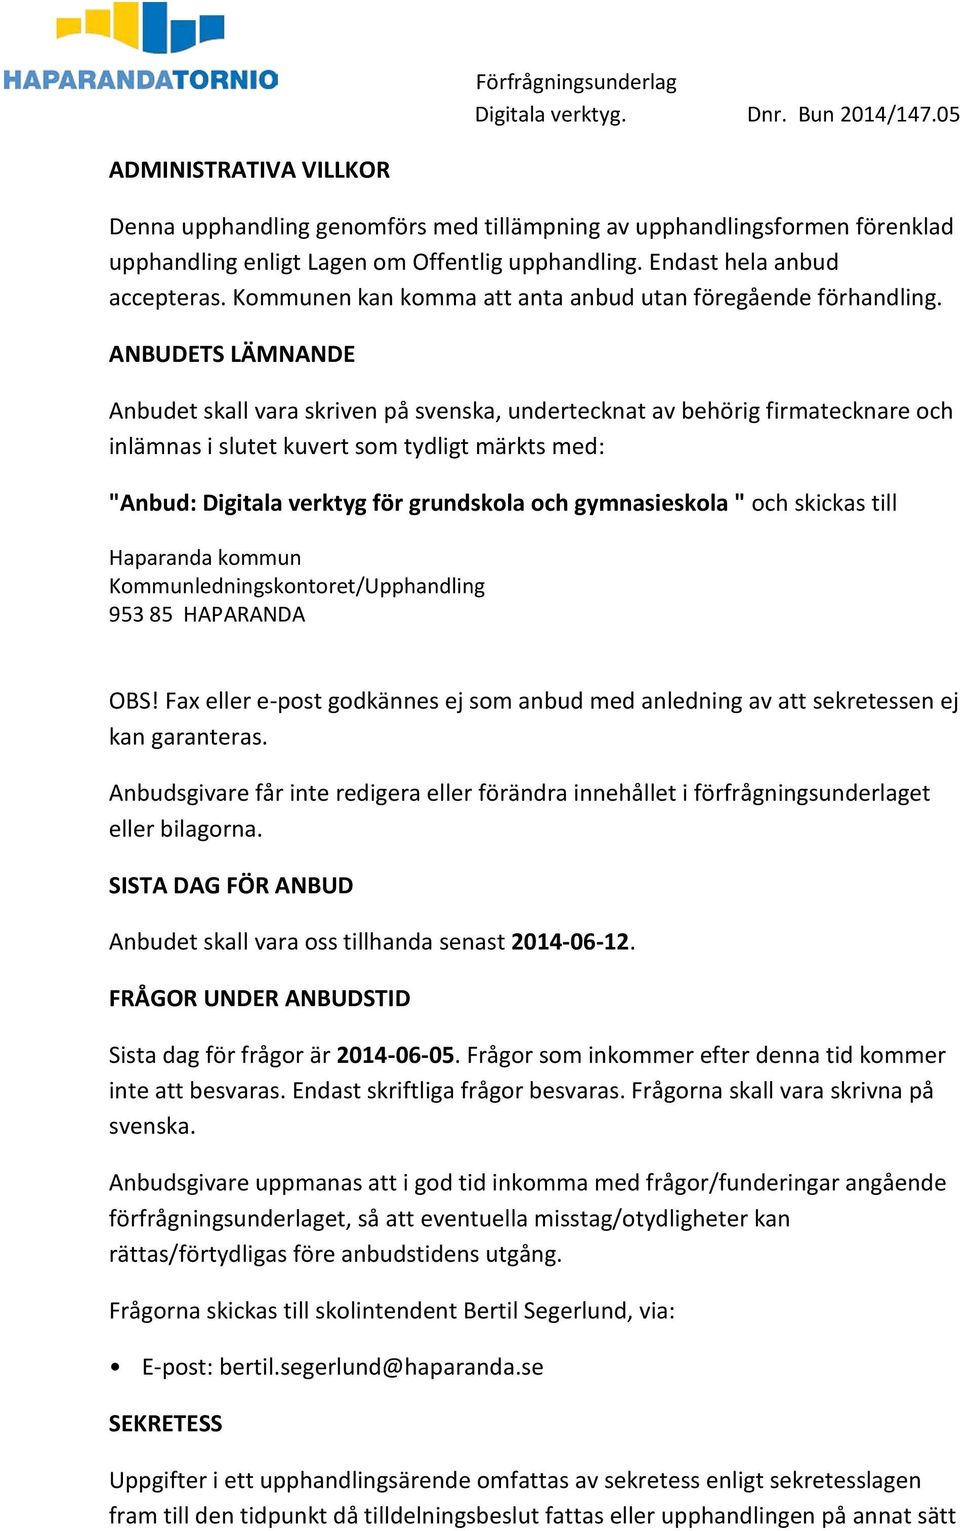 ANBUDETS LÄMNANDE Anbudet skall vara skriven på svenska, undertecknat av behörig firmatecknare och inlämnas i slutet kuvert som tydligt märkts med: "Anbud: Digitala verktyg för grundskola och